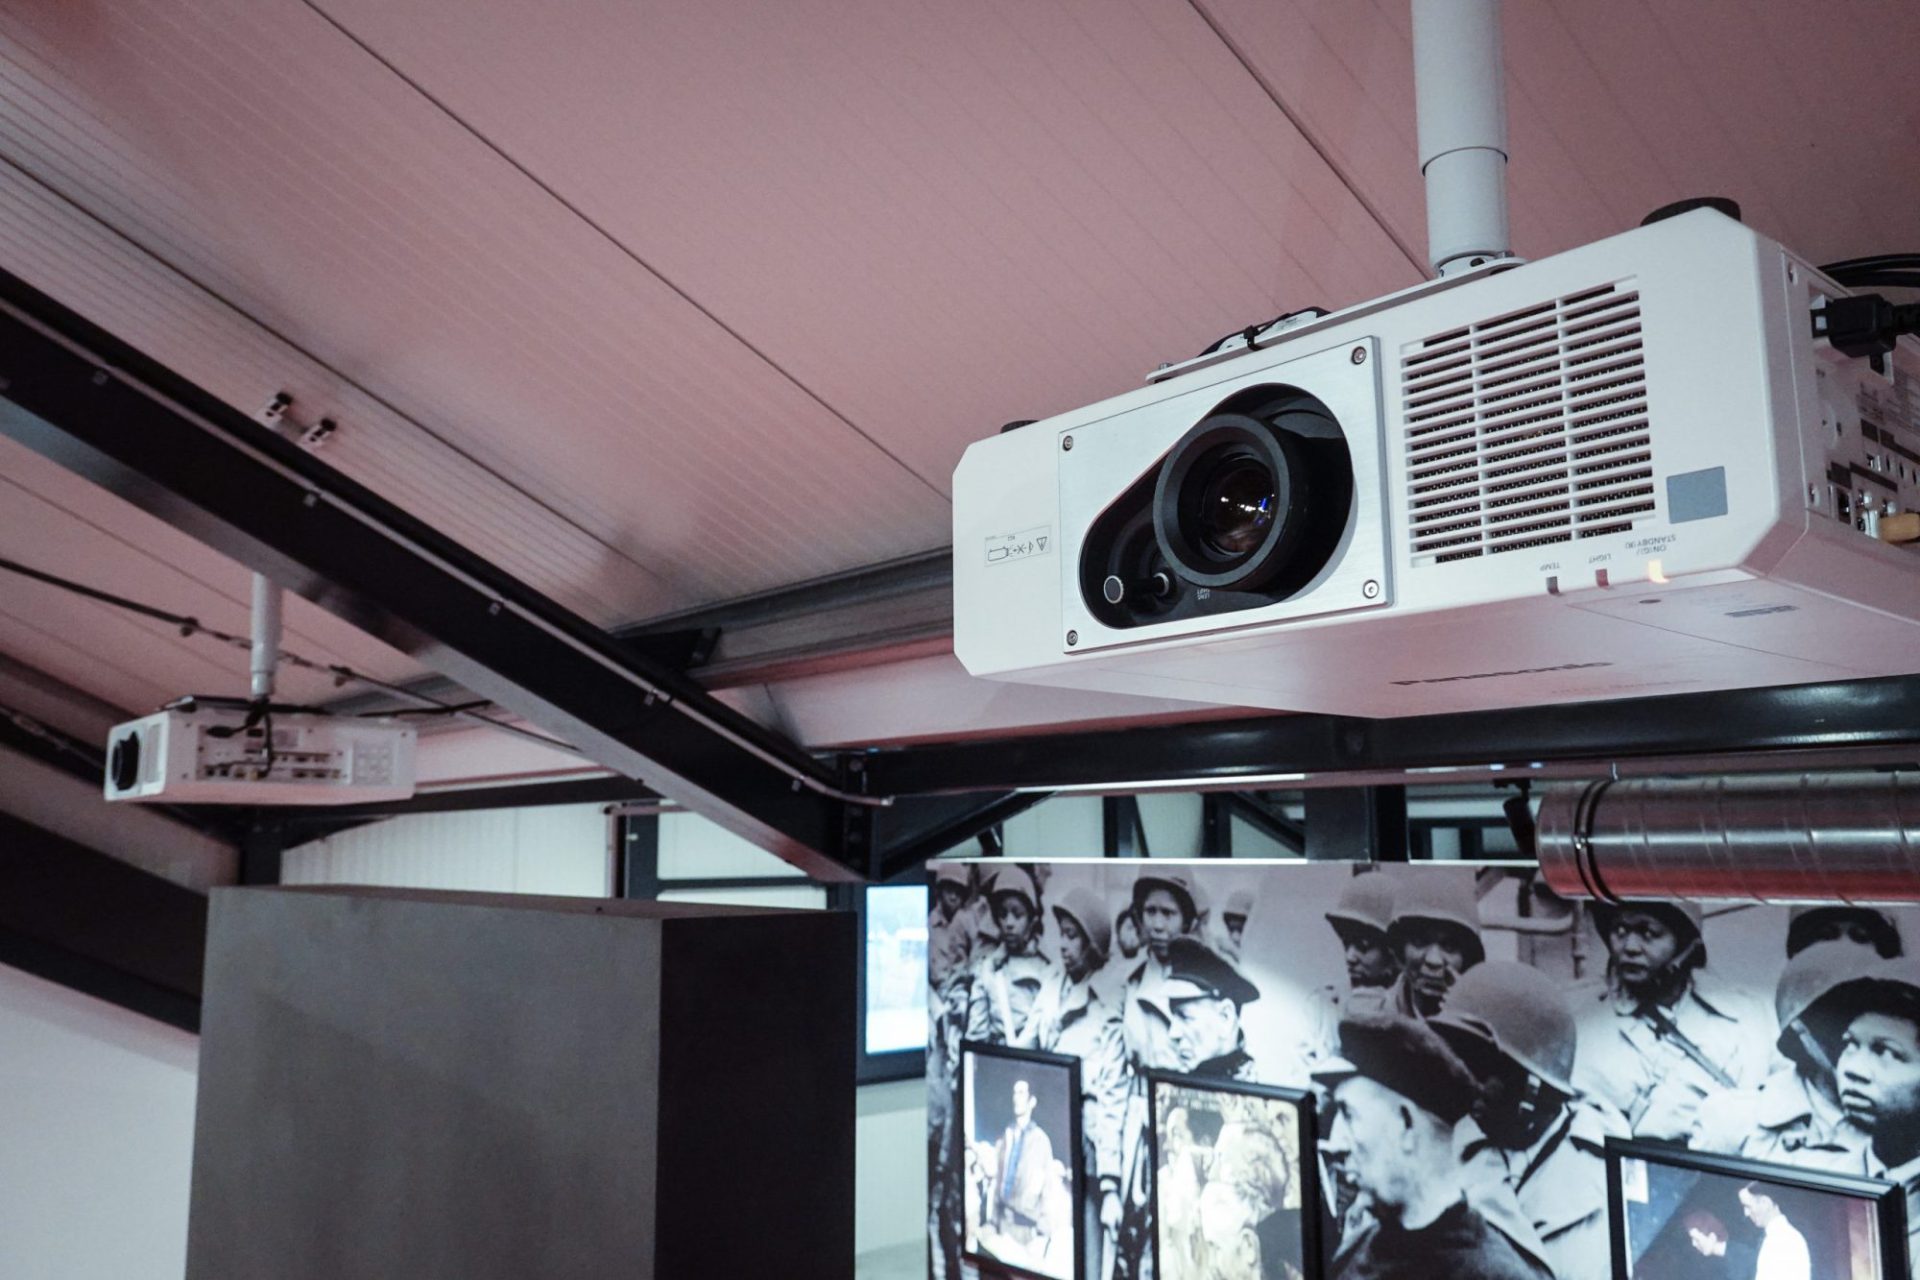 meerdere projectoren projecteren een film in een museum